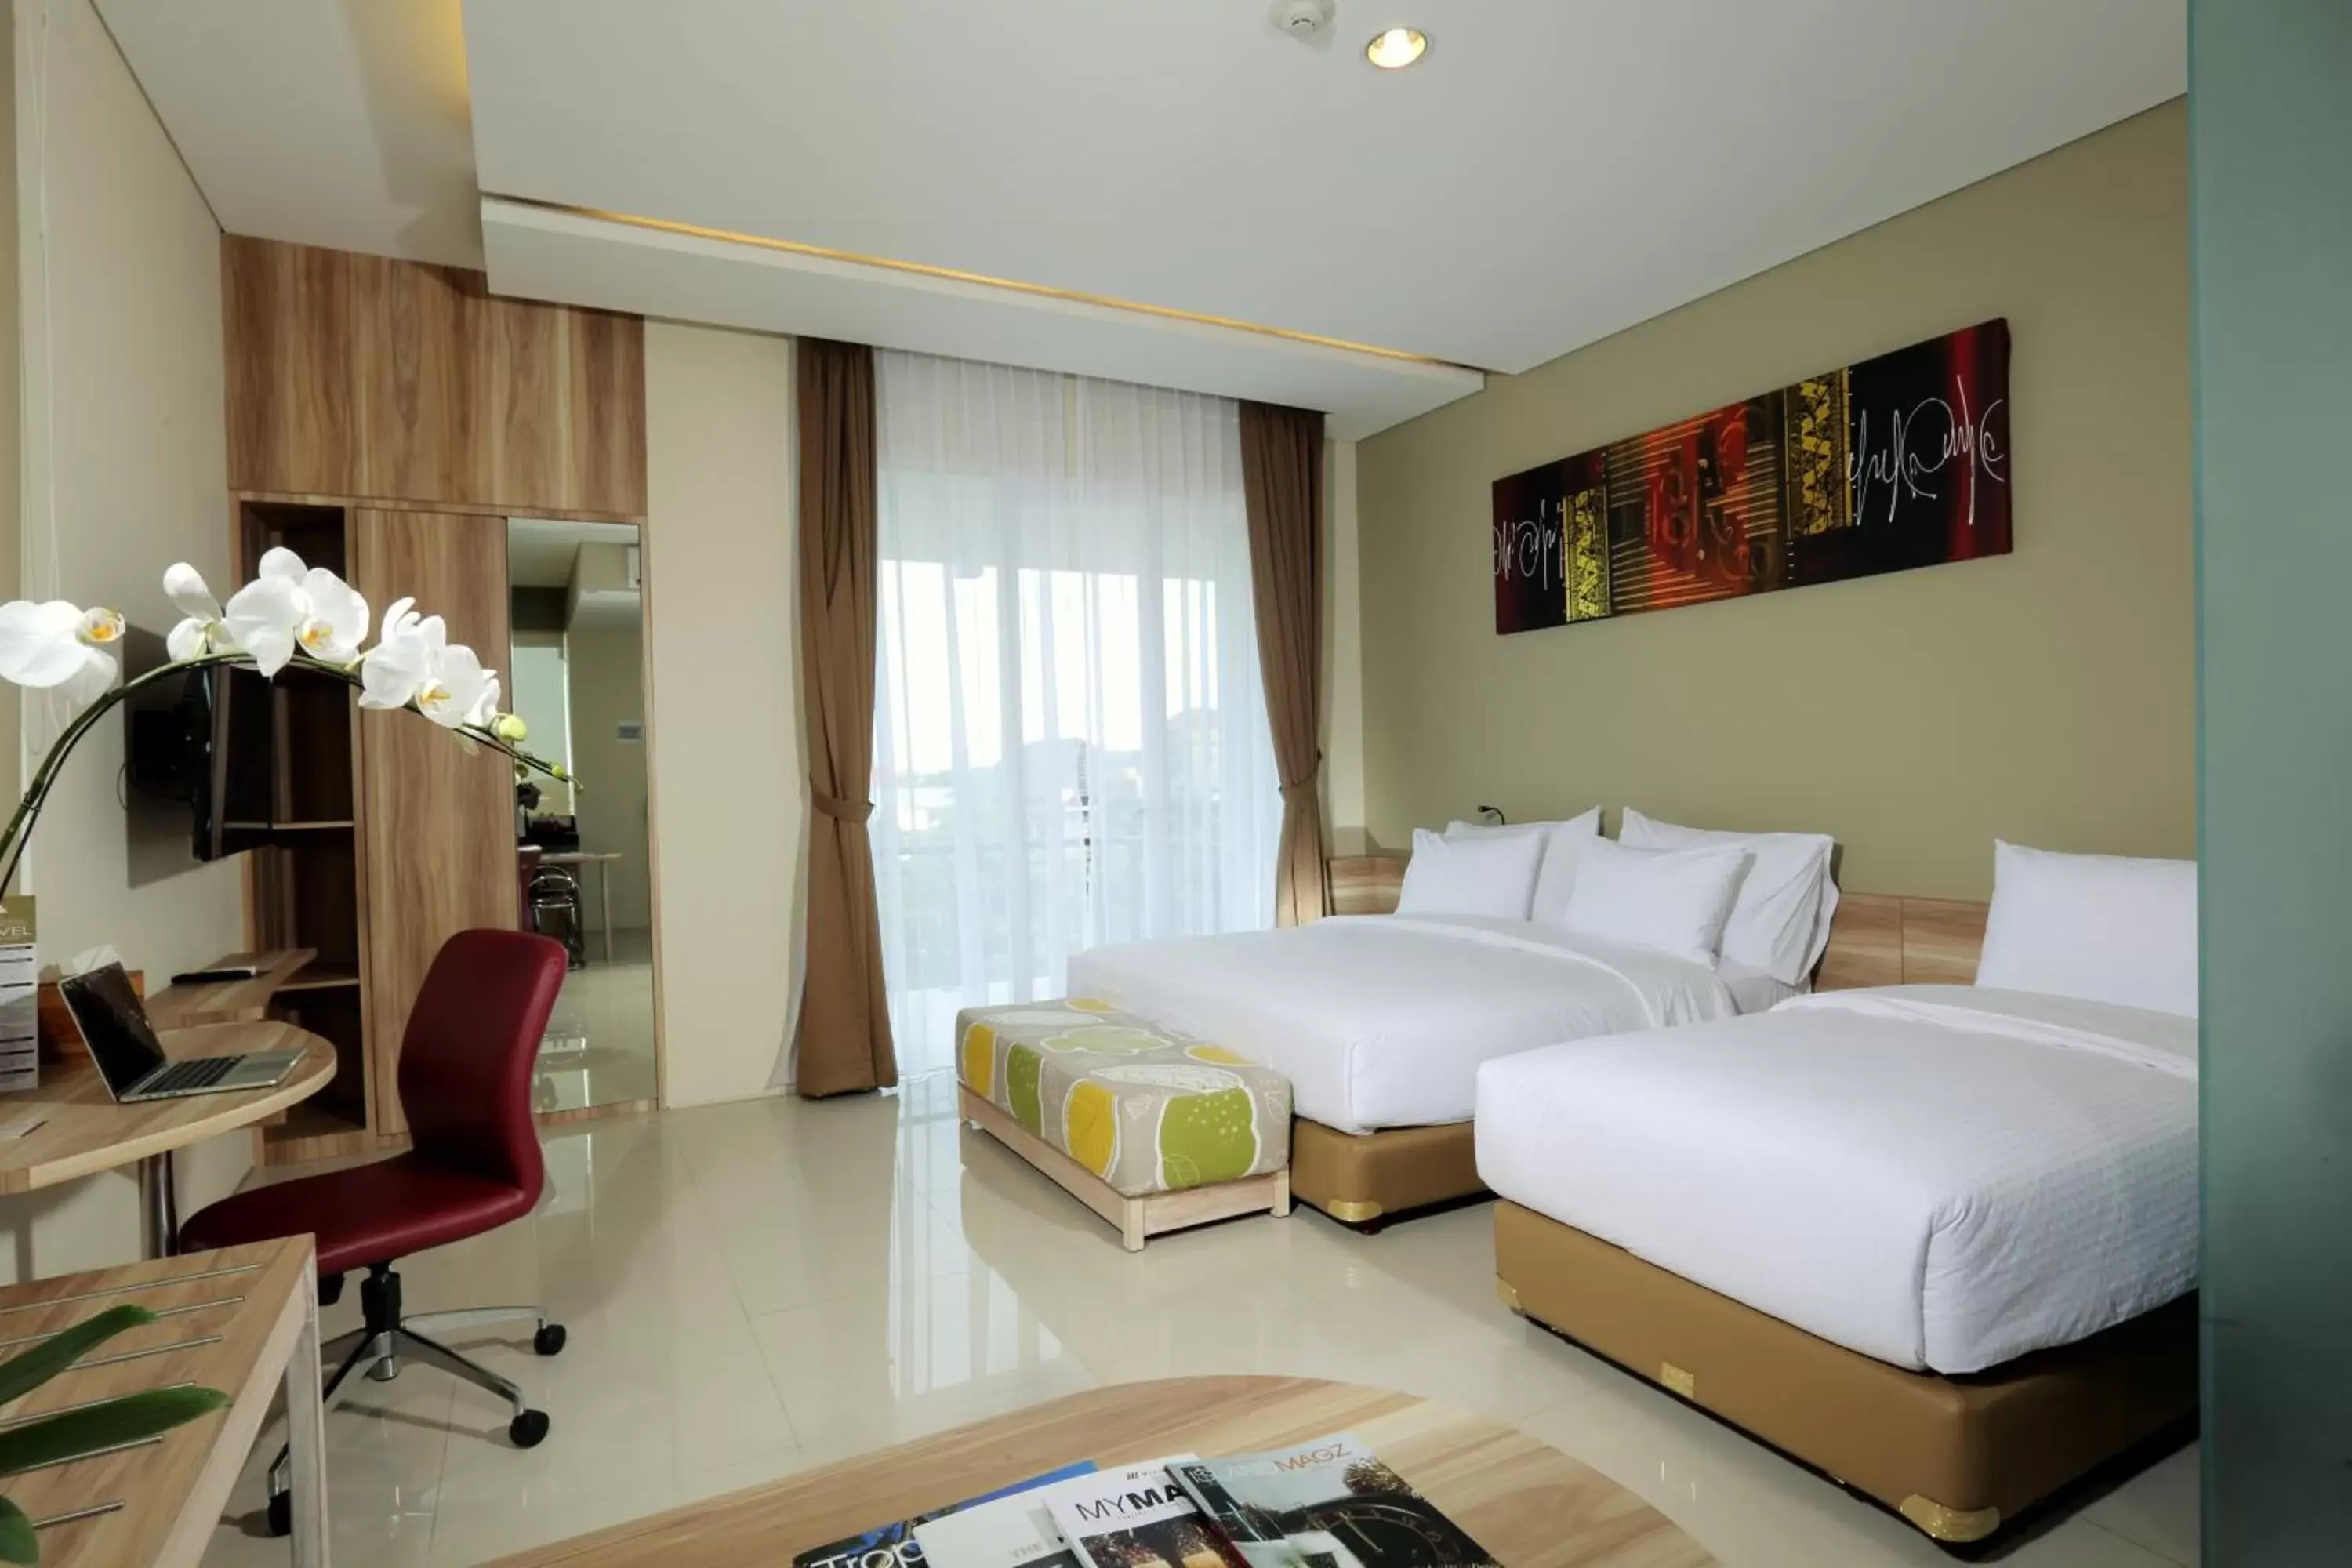 Room Photo in Mahogany Hotel